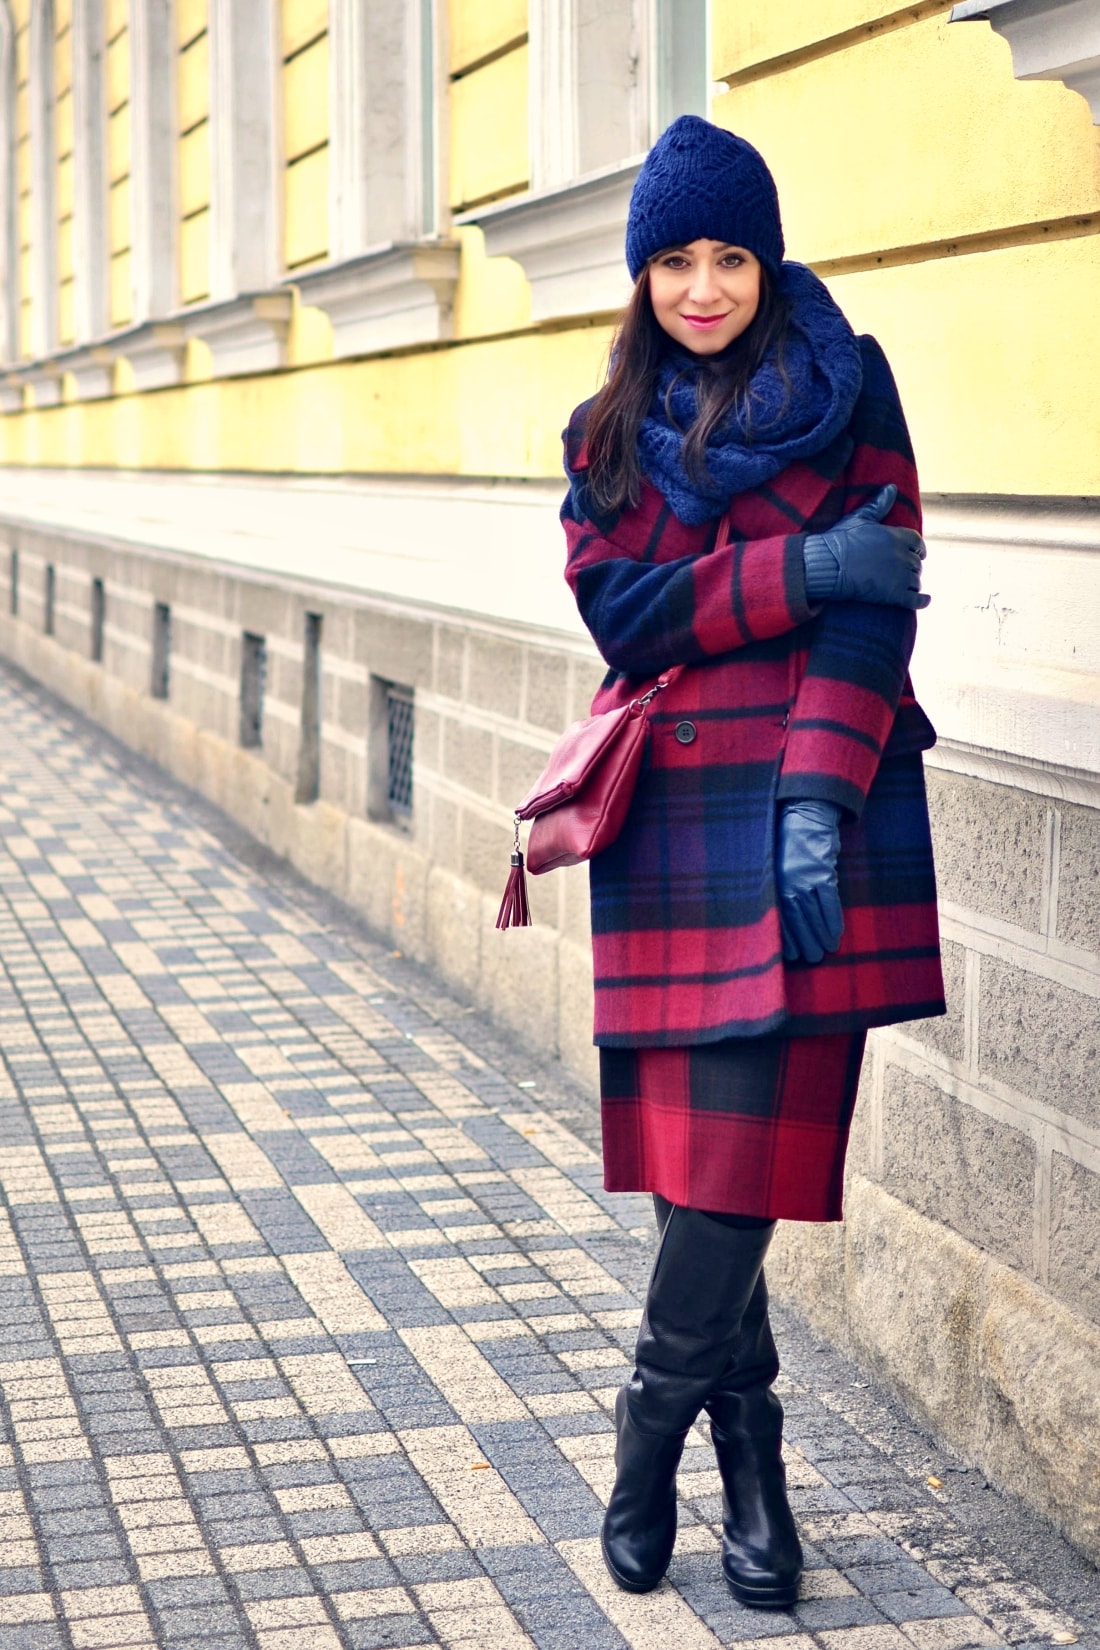 AKO NOSIŤ VZORY_Katharine-fashion is beautiful_Vzorovaný kabát_Katarína Jakubčová_Fashion blogger